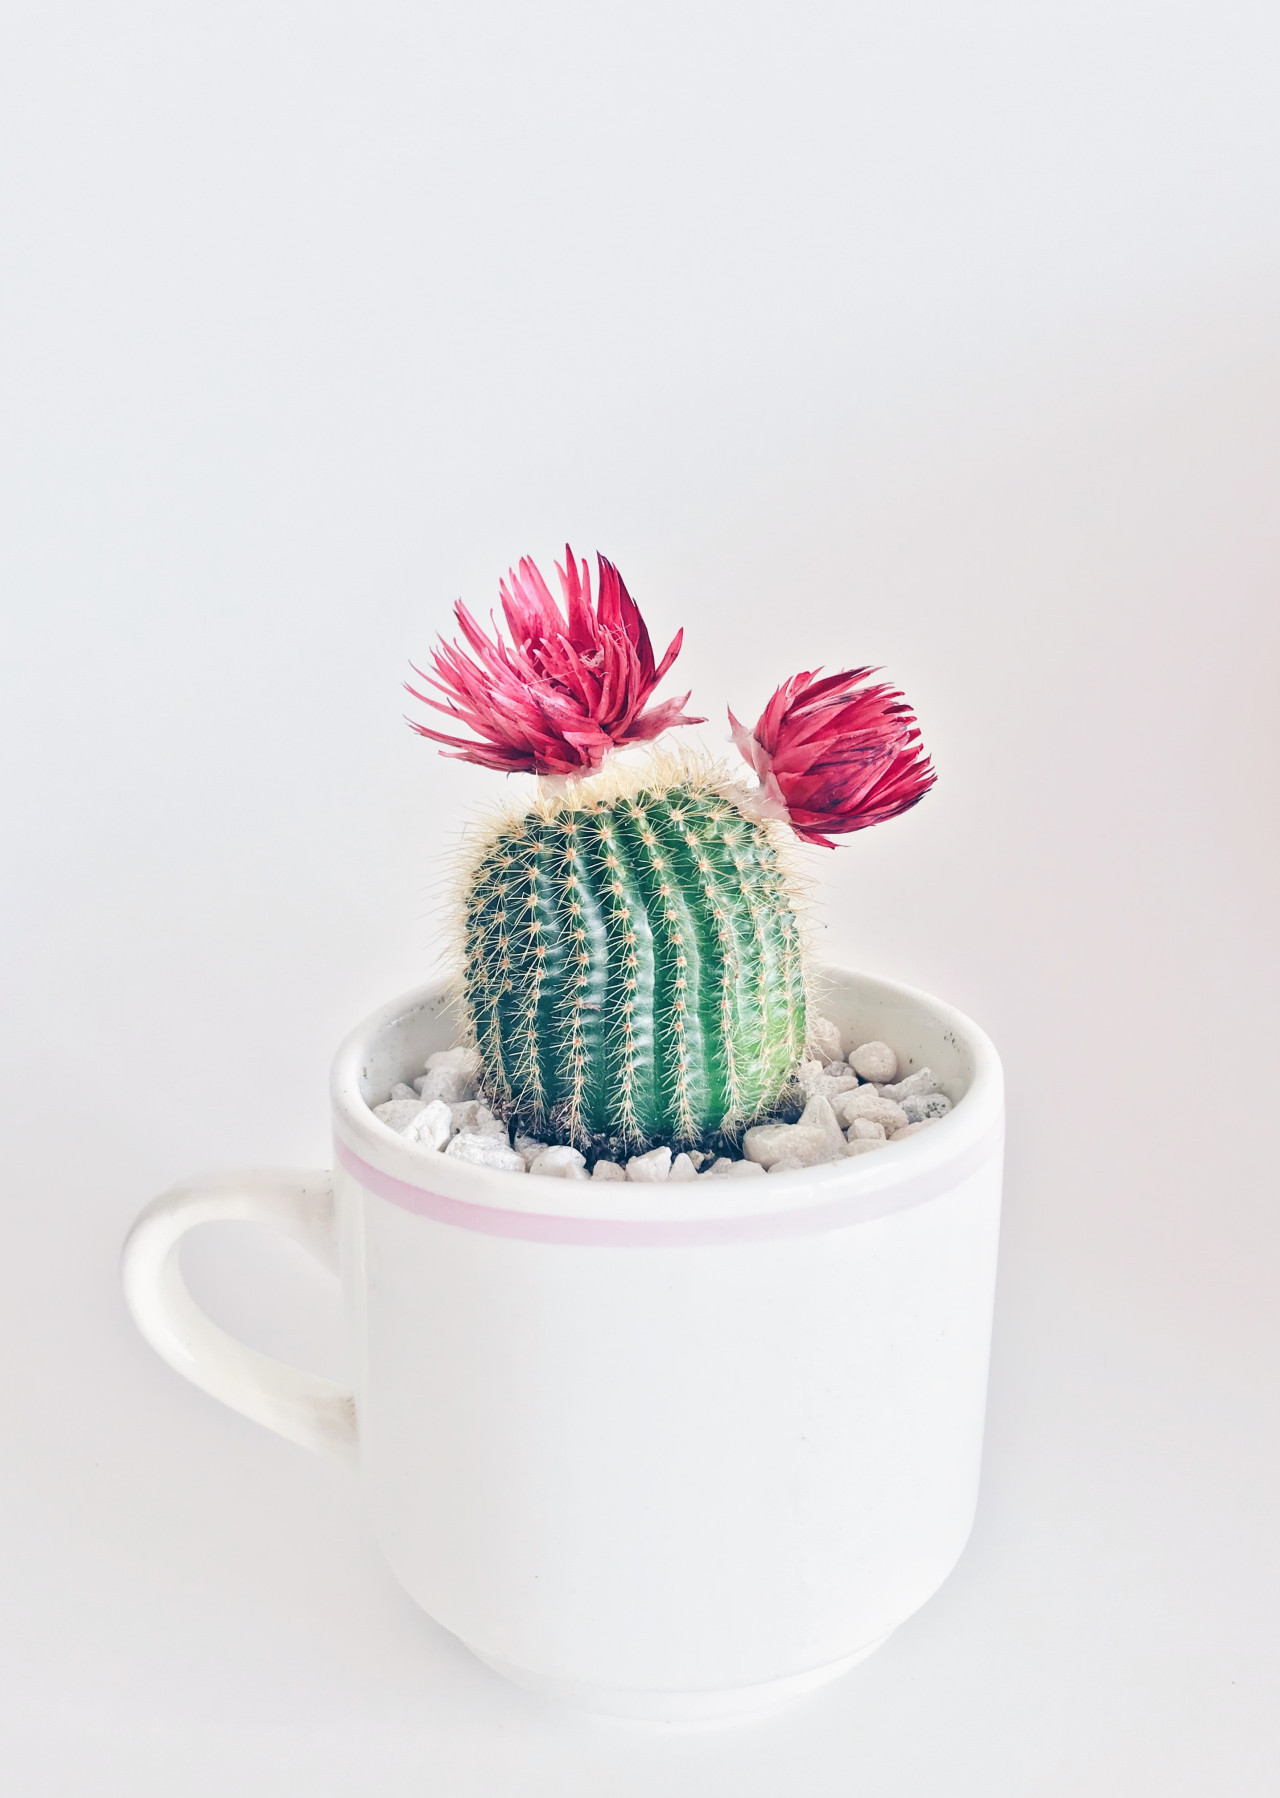 Cactus. Foto Unsplash.